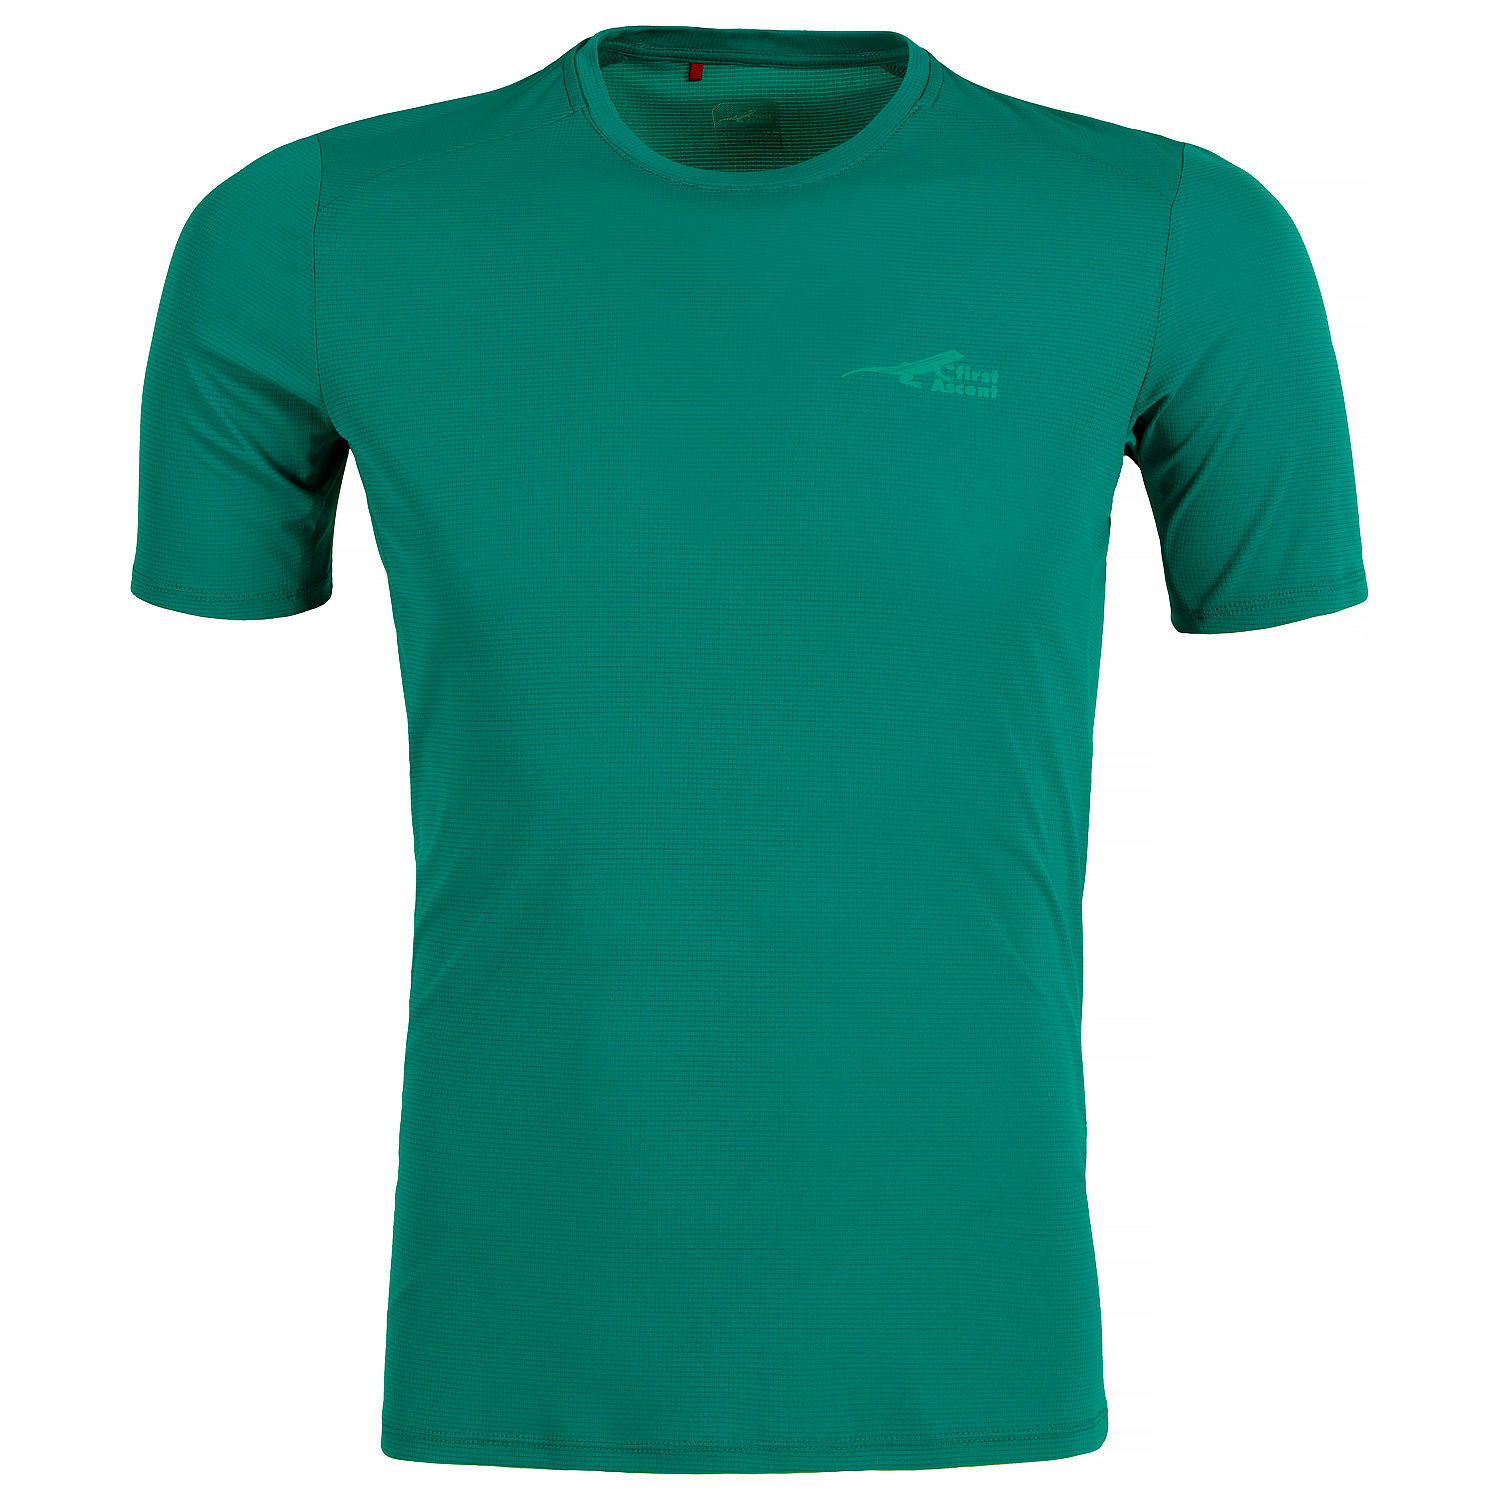 Men's X-trail Running T-shirt - GU